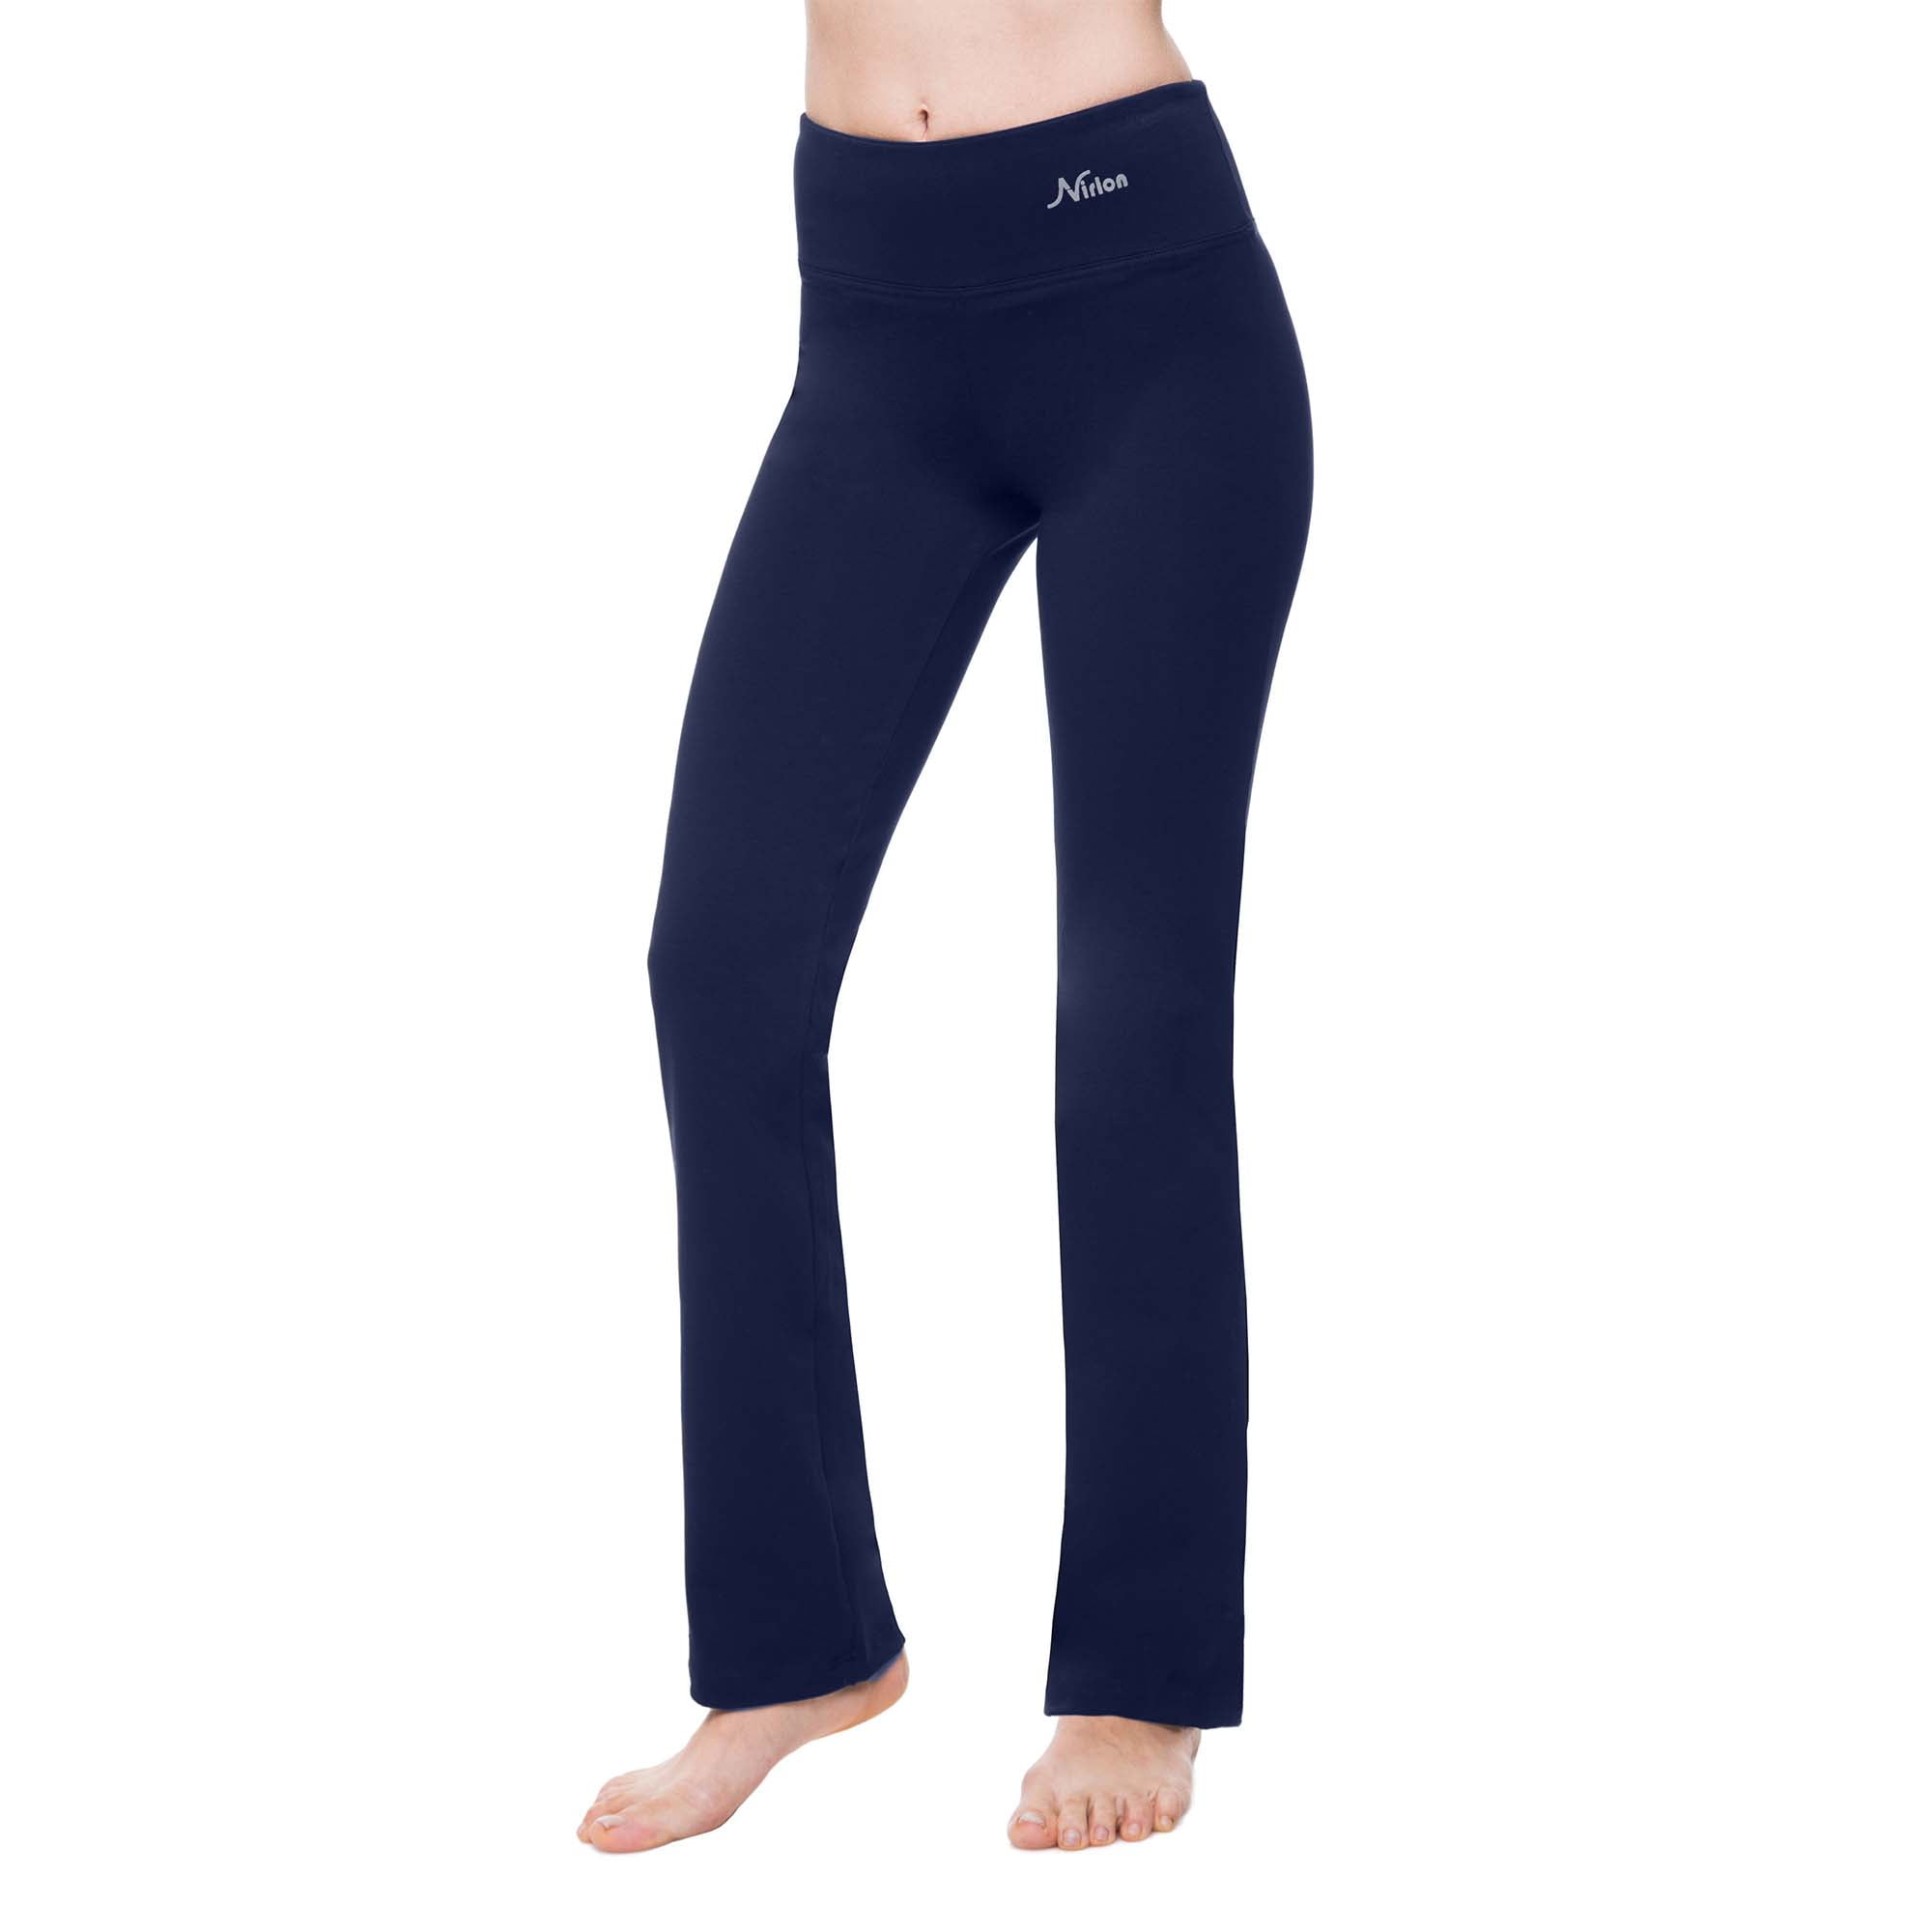  Nirlon Straight Leg Yoga Pants - Straight Leg Yoga Pants for  Women Breathable Leggings for Women for Yoga Regular & Plus Size Pants for Women  Yoga Work Pants for Women (S